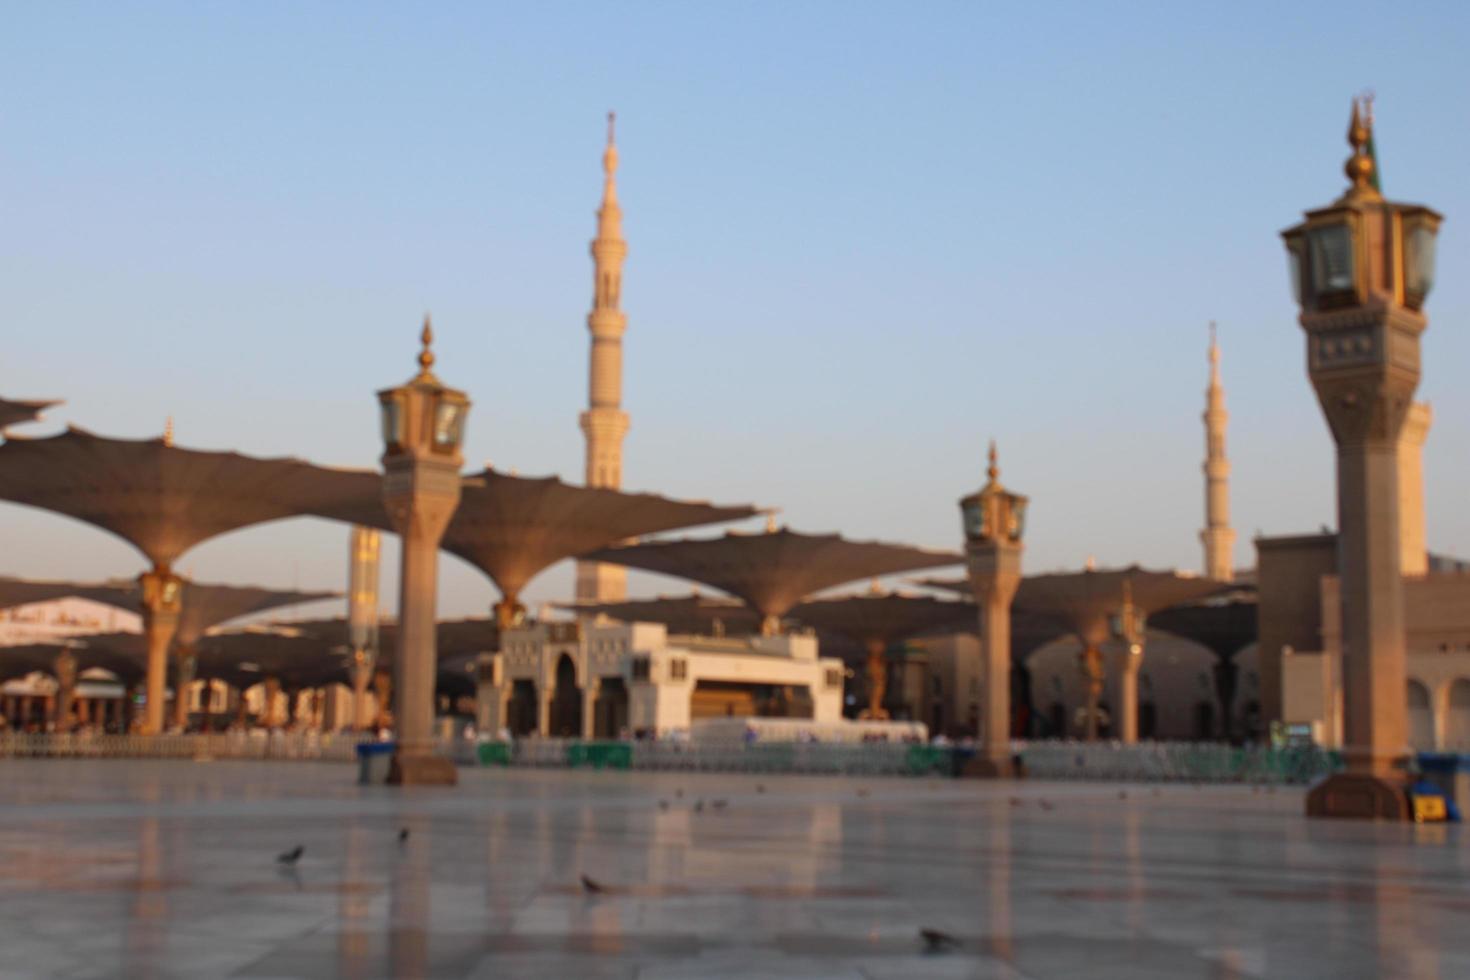 medina, arabia saudita, oct 2022 - una hermosa vista diurna de los minaretes masjid al nabawi y sombrillas o marquesinas electrónicas. foto